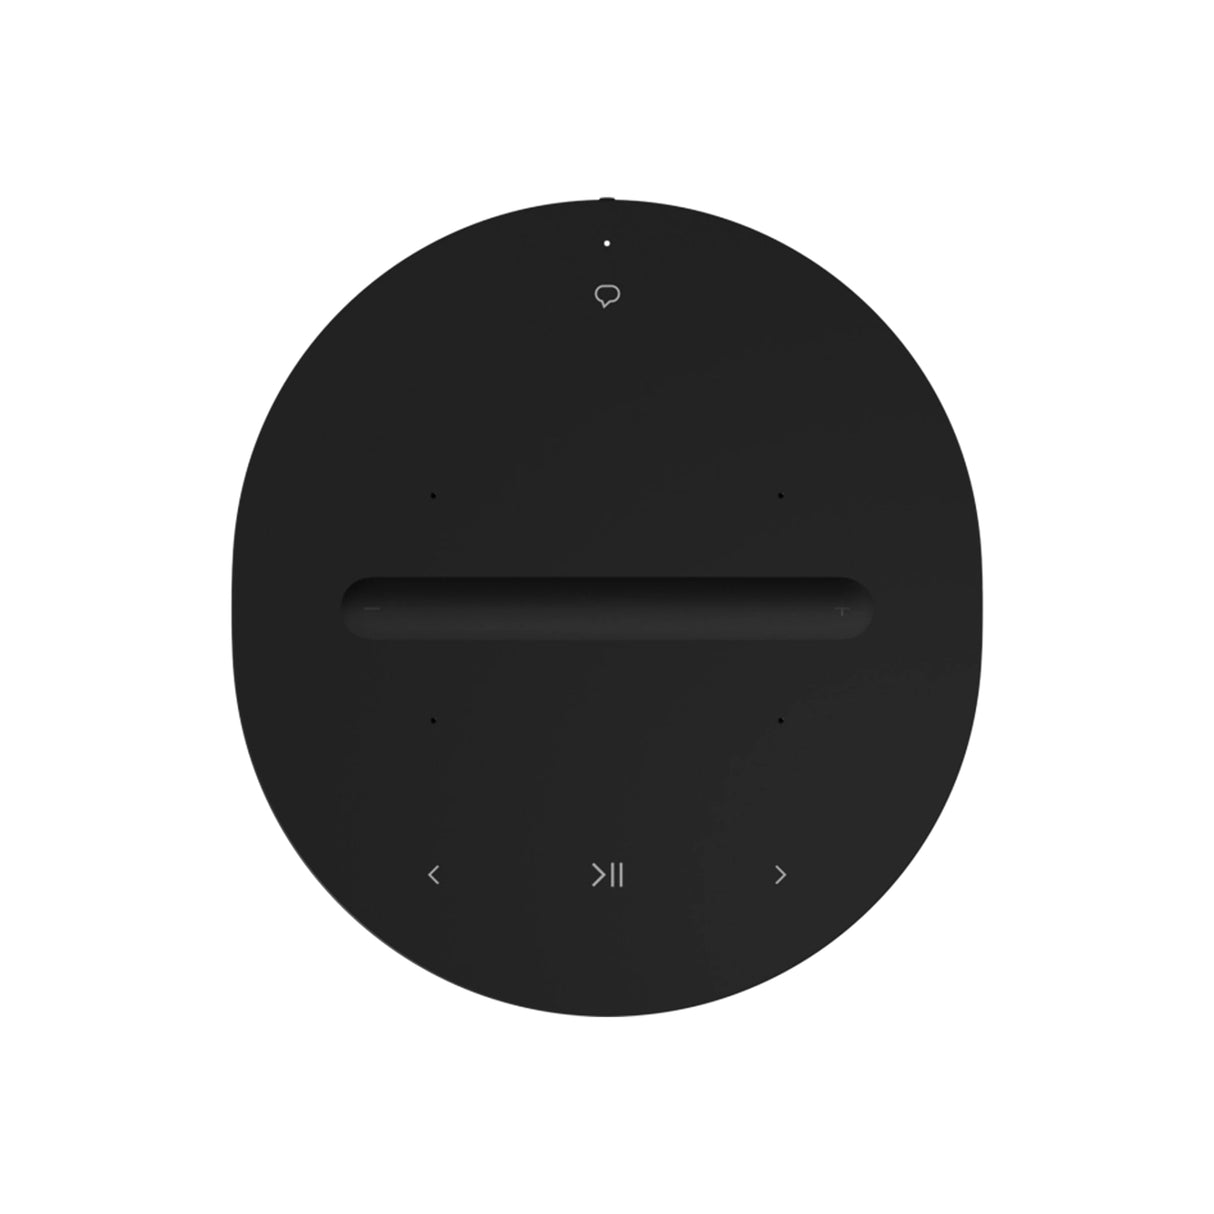 Sonos Era 100 - Wireless Speaker/Multiroom Speaker (Black) (Each)